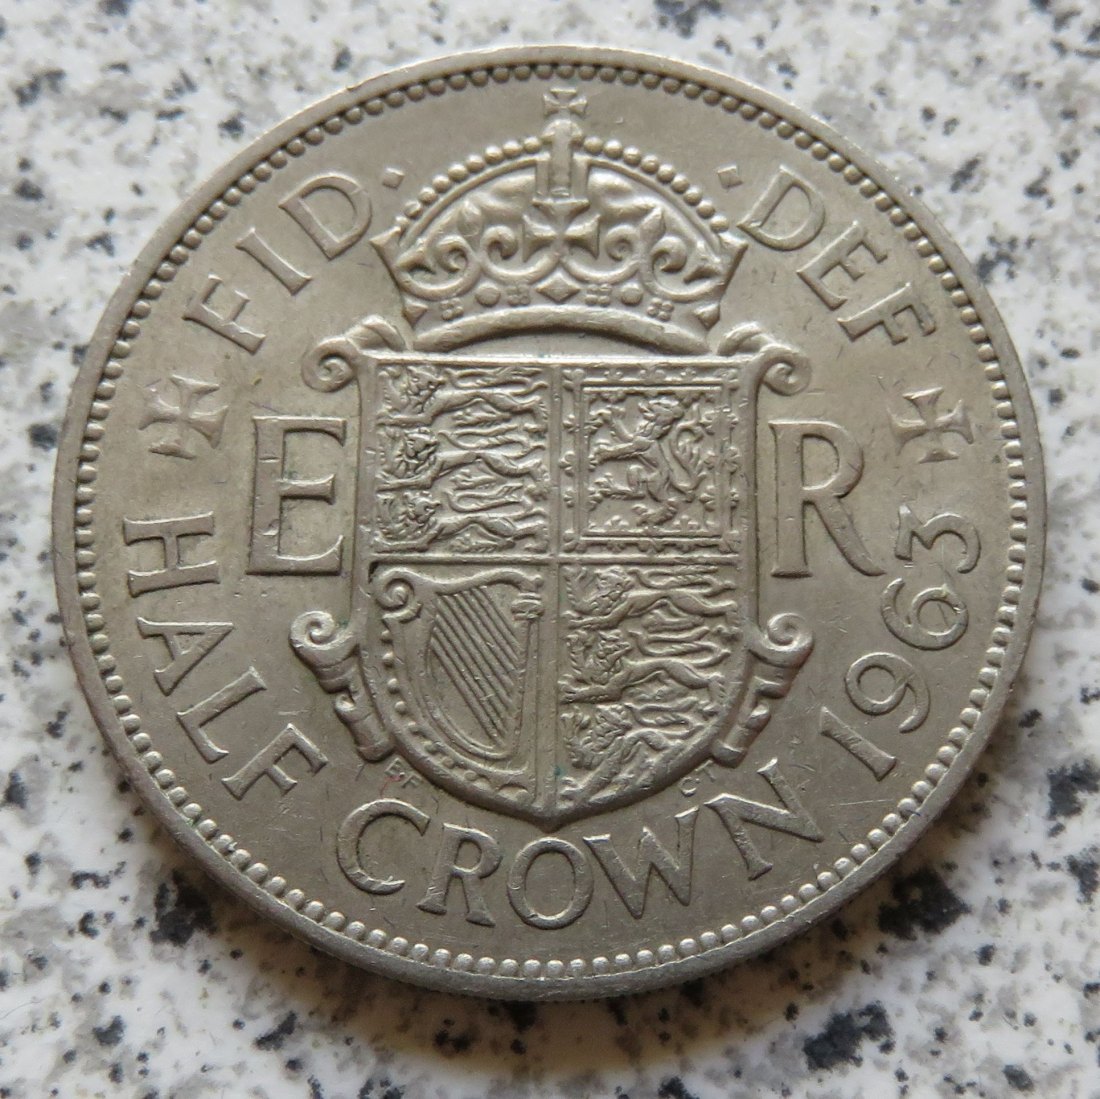  Großbritannien half Crown 1960   